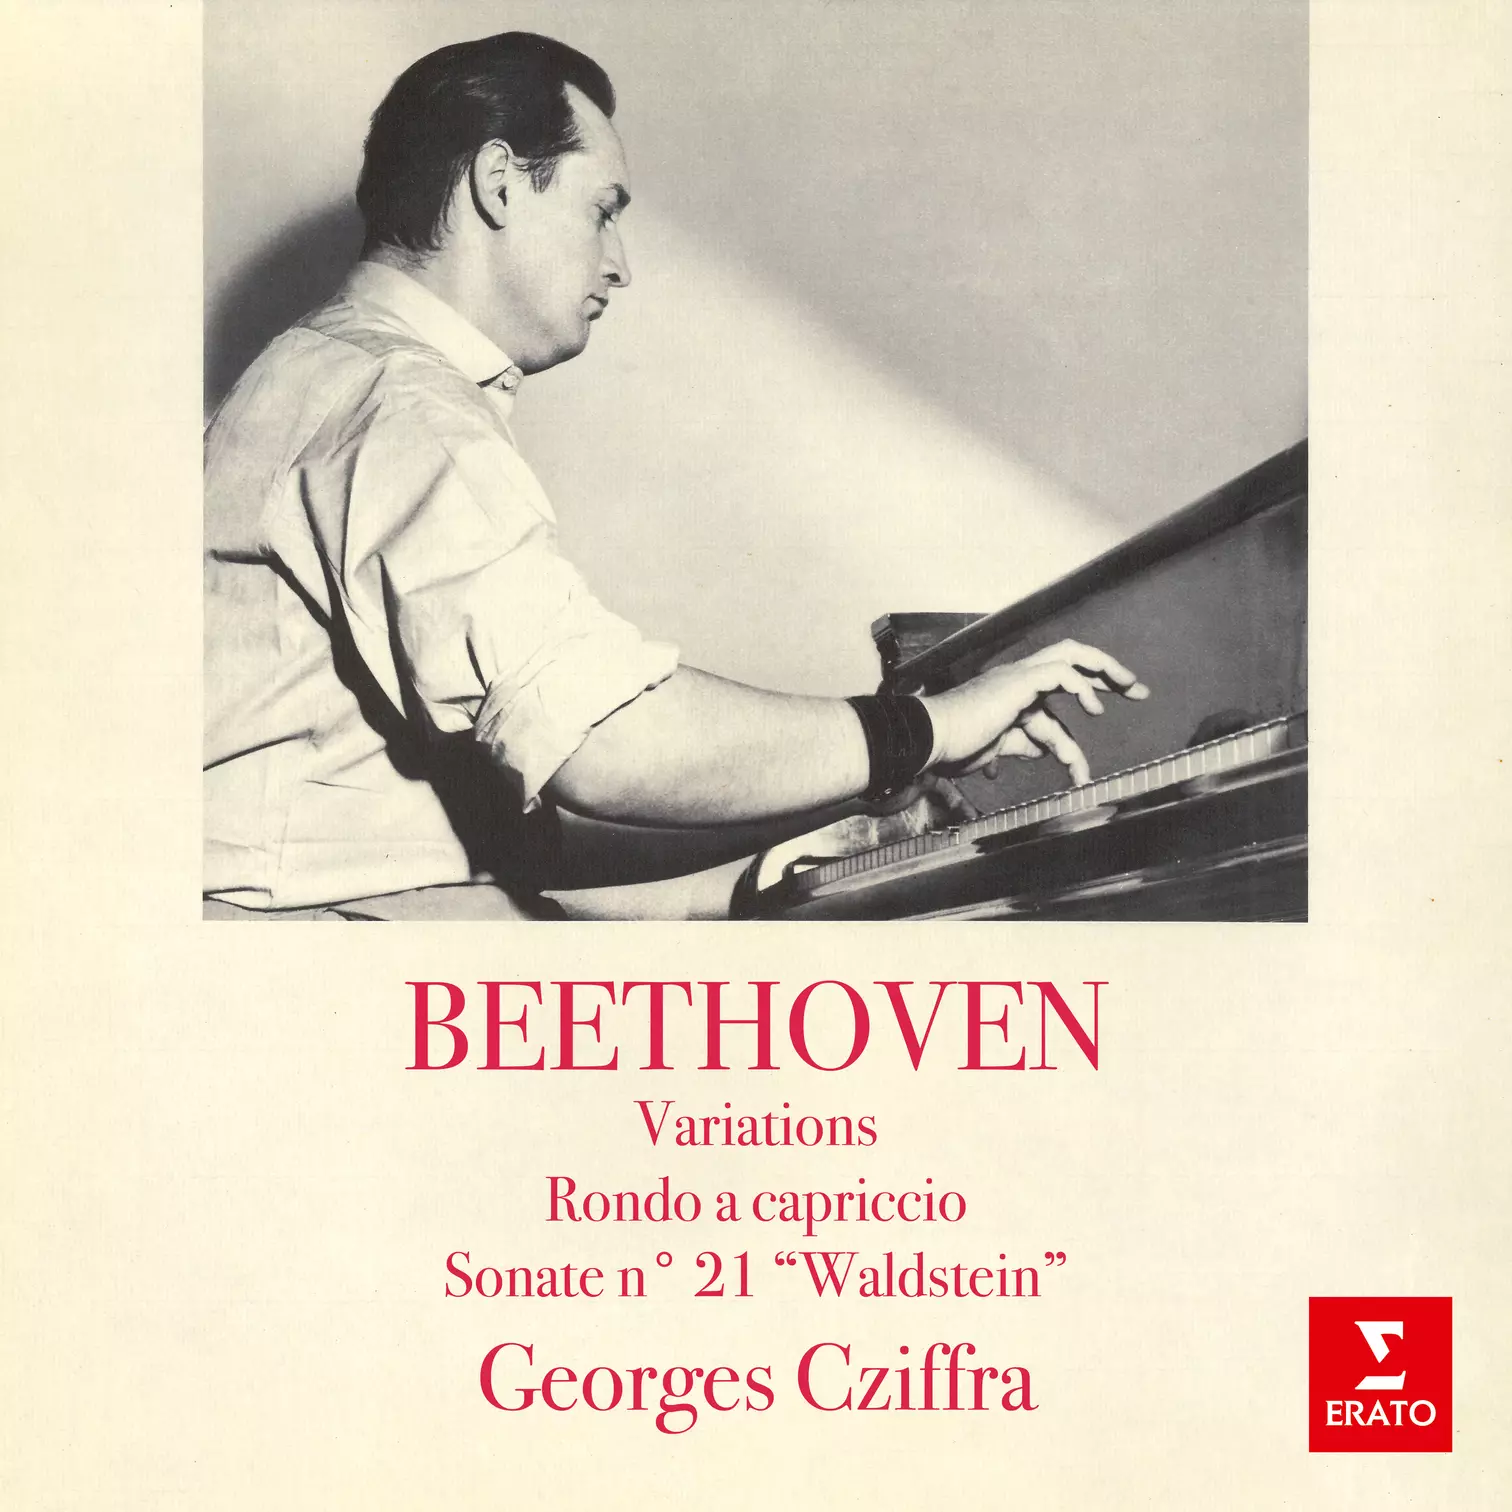 Beethoven: Variations, Rondo a capriccio & Sonate No. 21 “Waldstein”